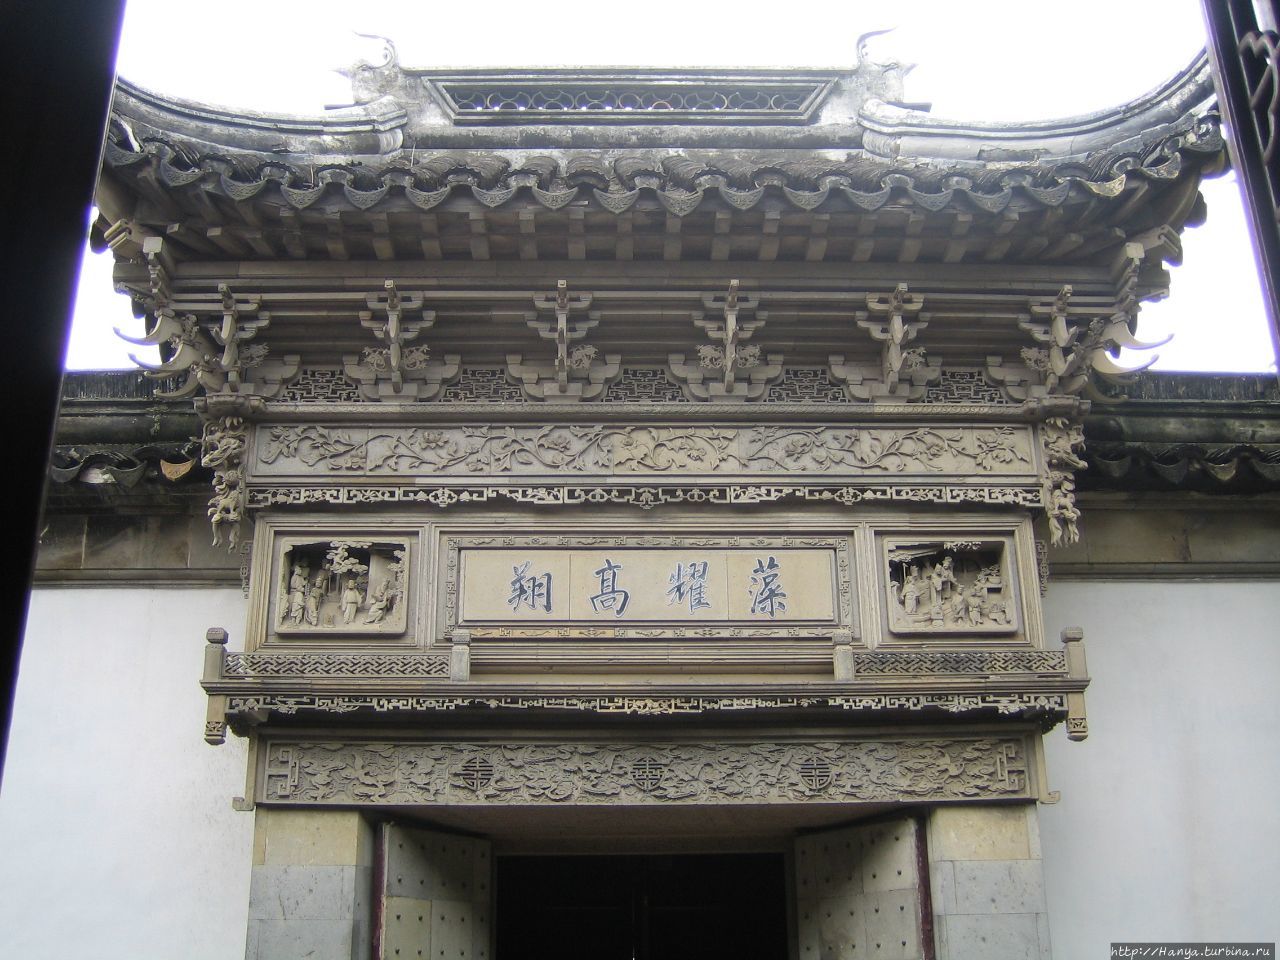 Сучжоу. Сад  мастера сетей (сад рыбака). Входные ворота, покрытые искусным орнаментом